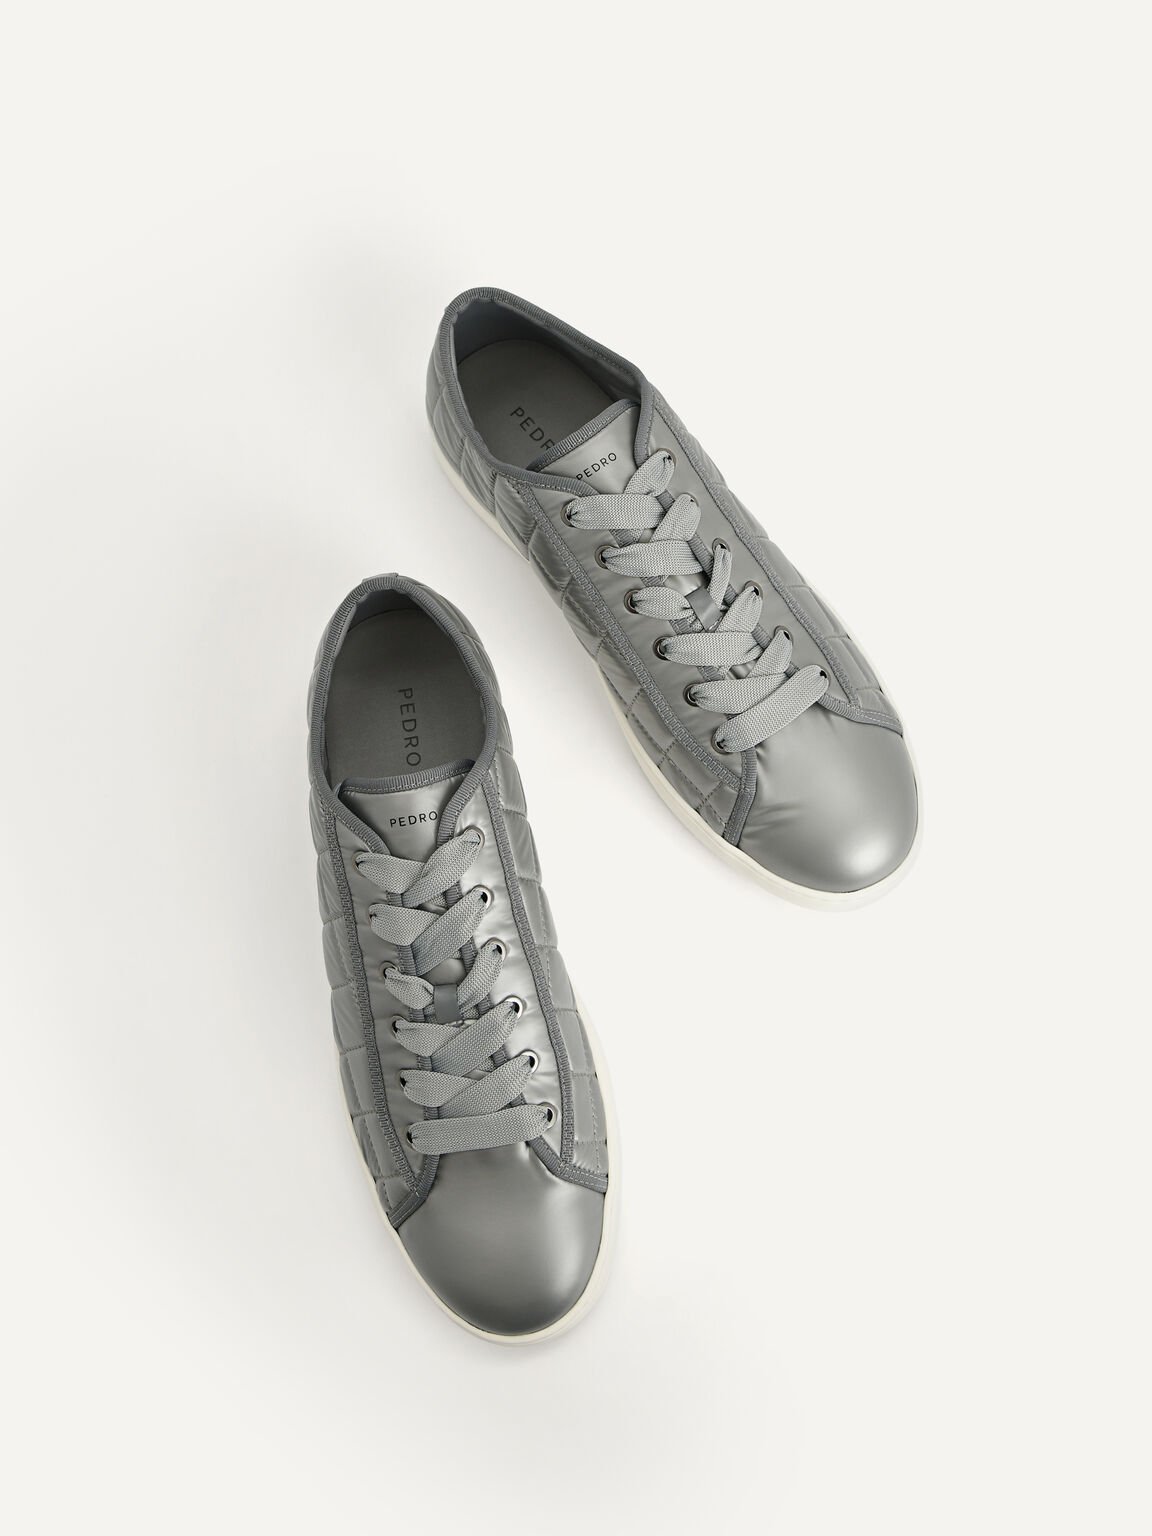 絎縫休閒運動鞋, 灰色